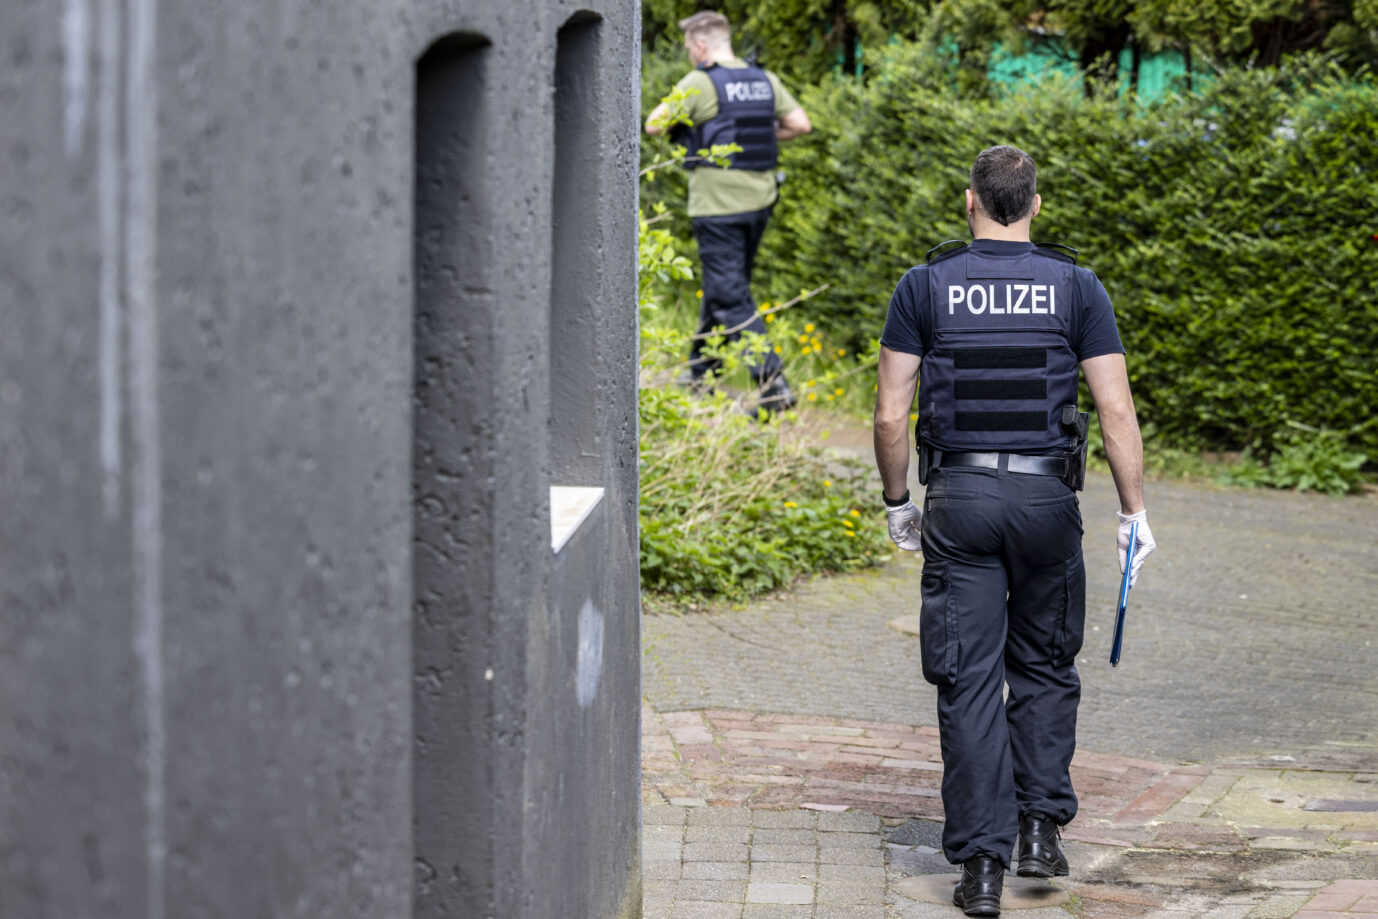 Brandanschlag mit vier Toten: Beamte der Polizei durchsuchen das Haus des Tatverdächtigen in Solingen